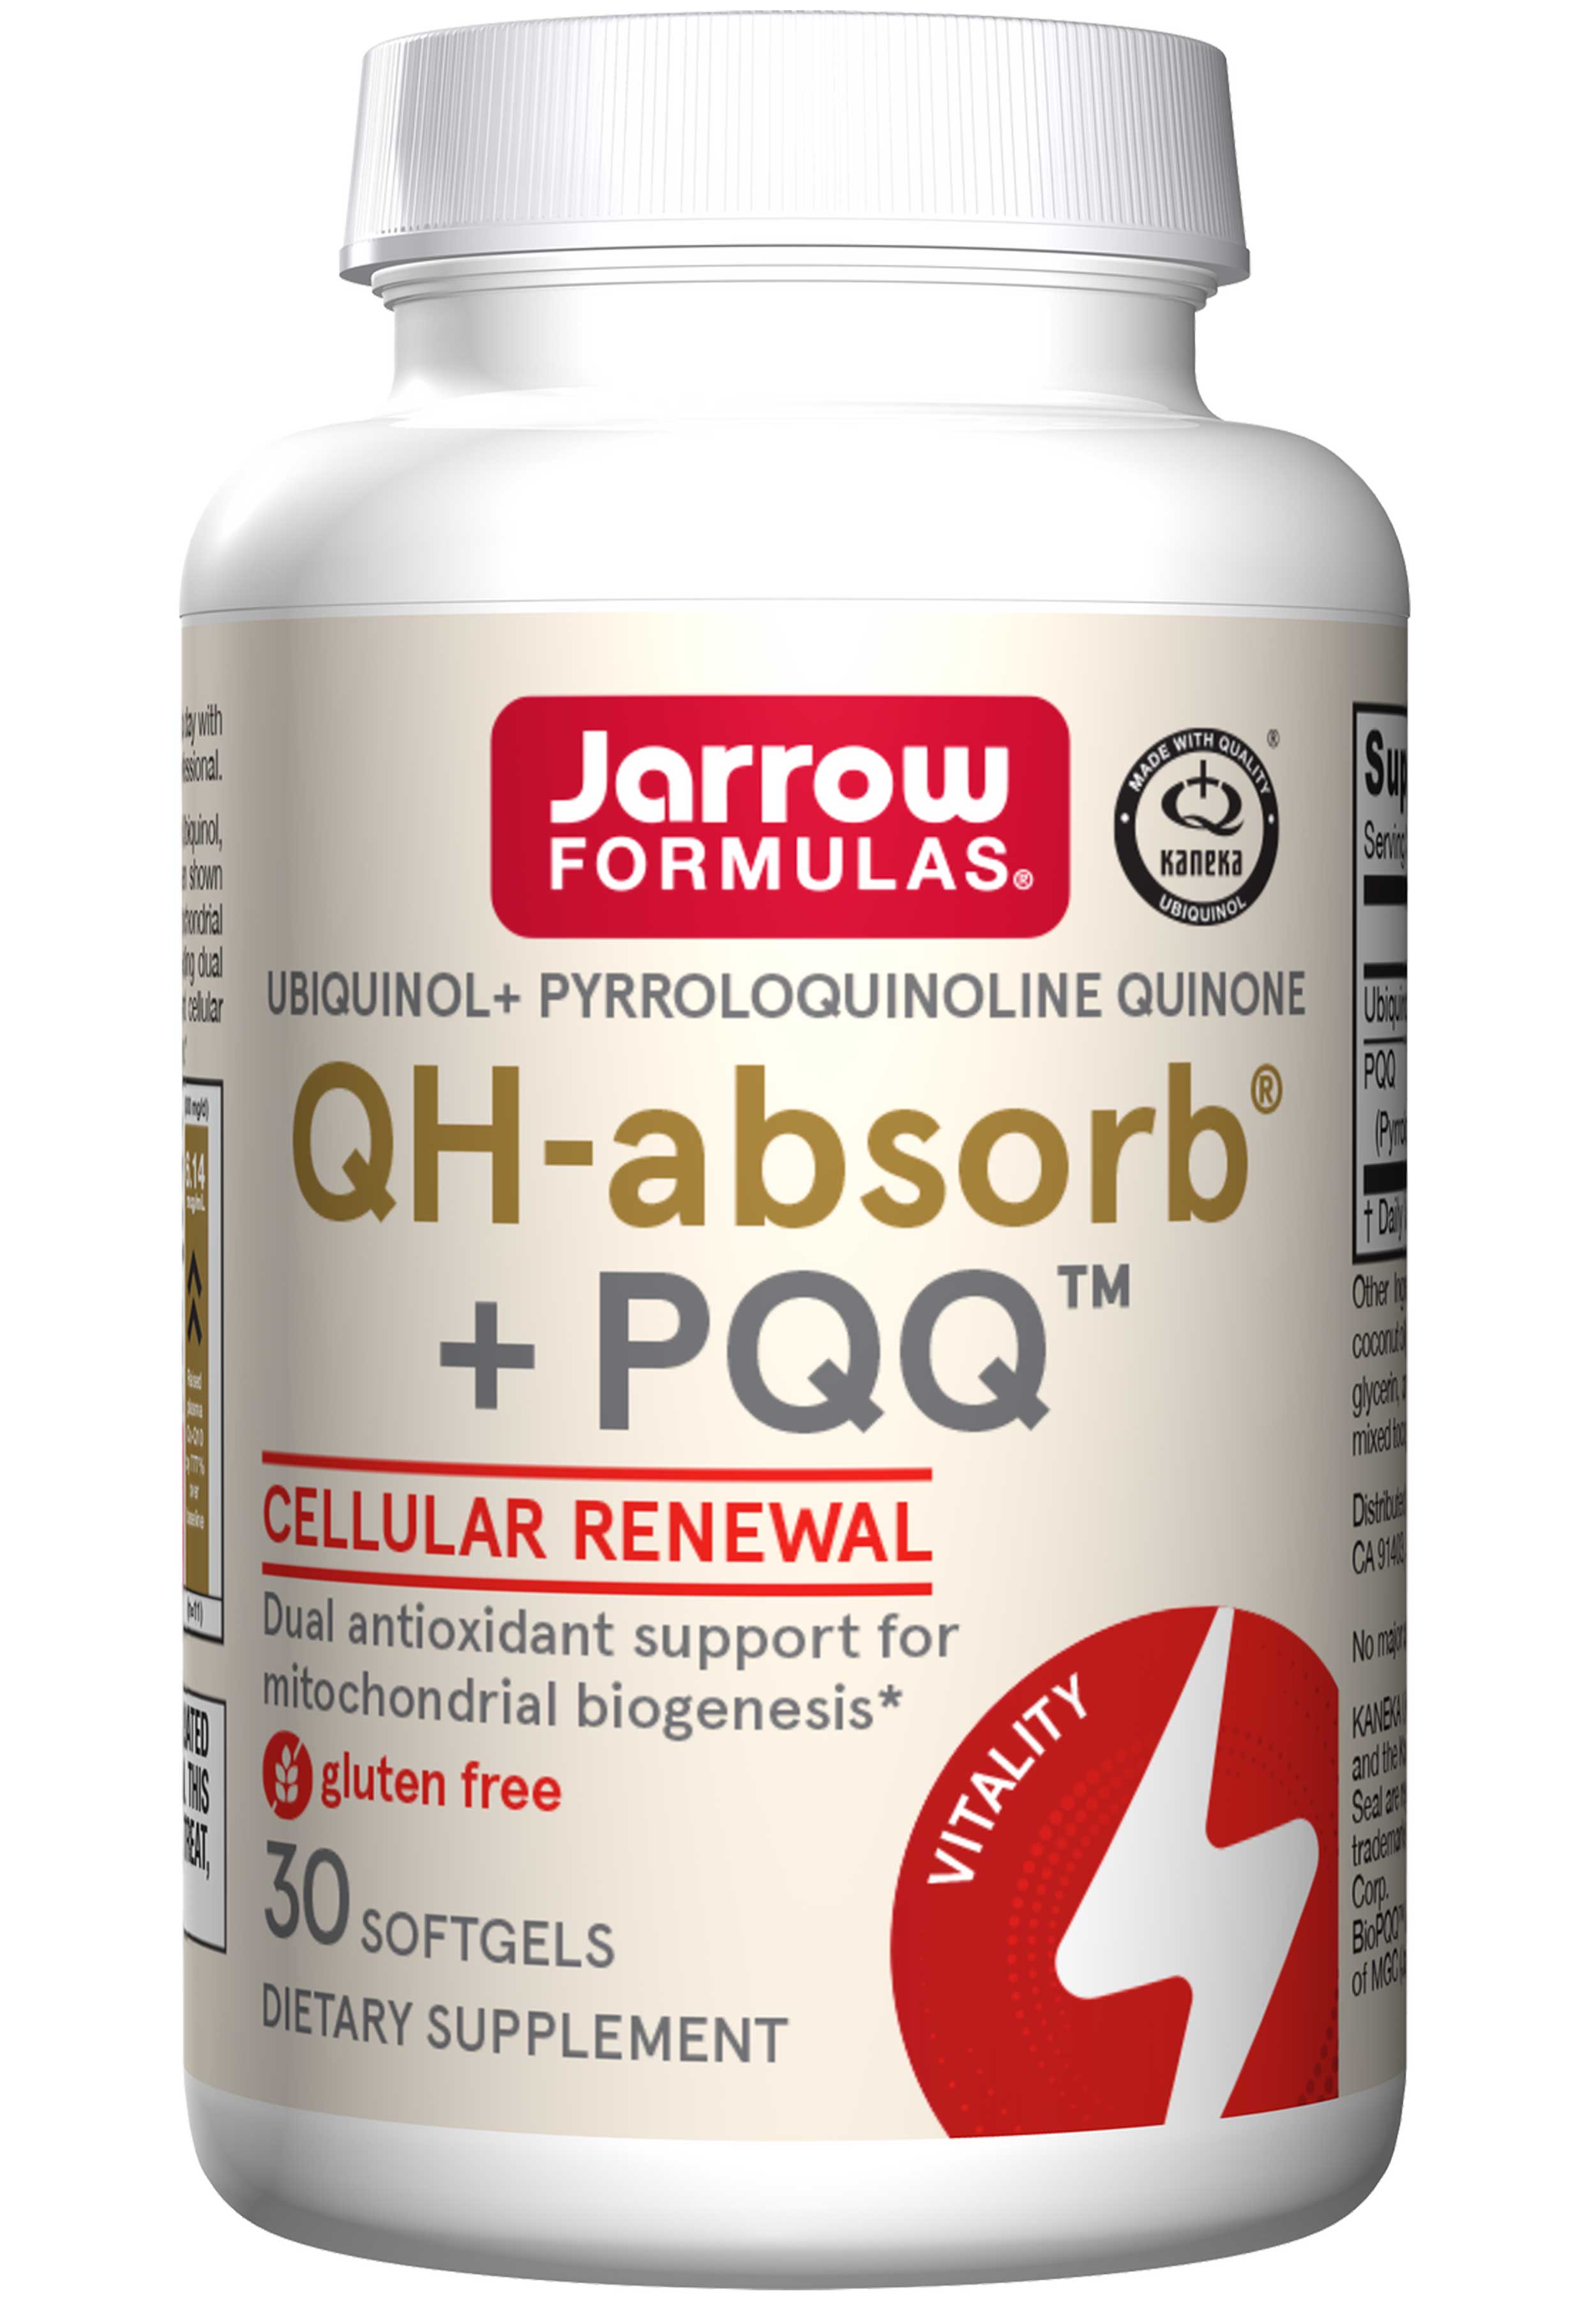 Jarrow Formulas QH-absorb + PQQ